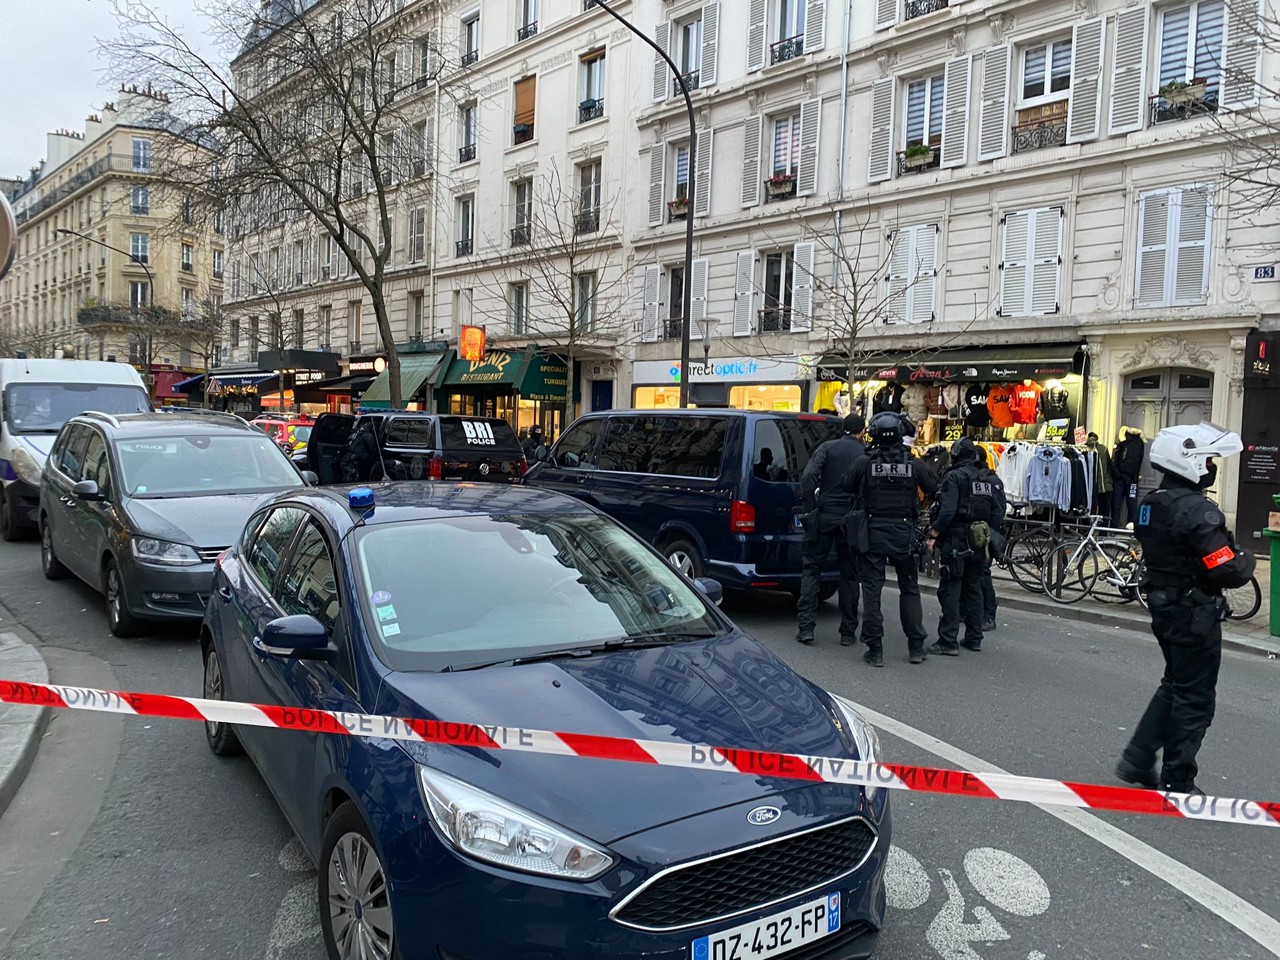 Prise d’otages en cours dans un magasin à Paris